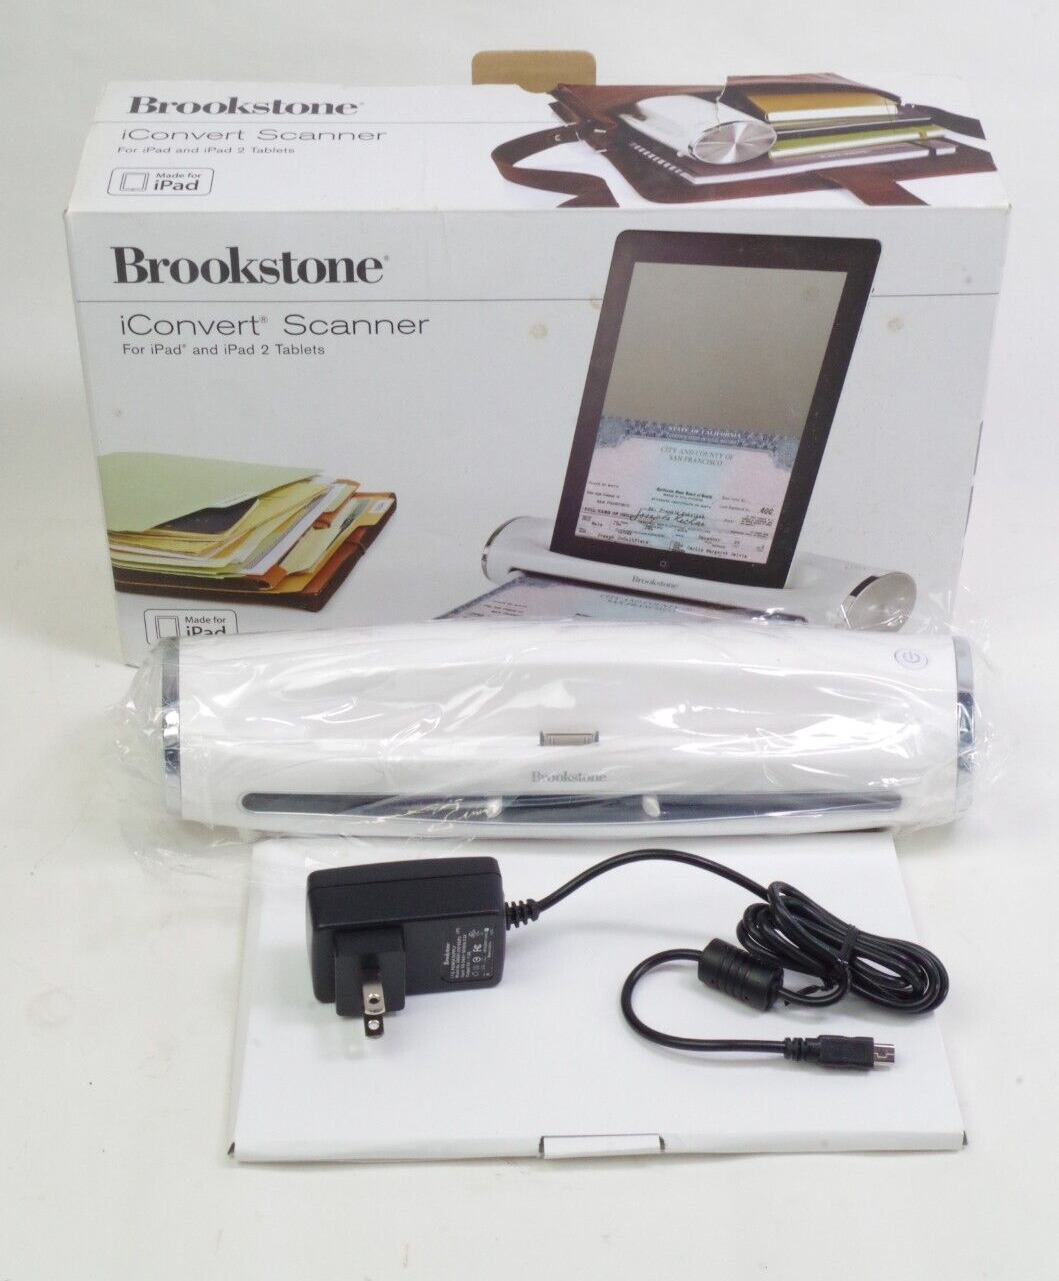 Brookstone iConvert Scanner Dock for Apple iPad 1 iPad 2 Unused